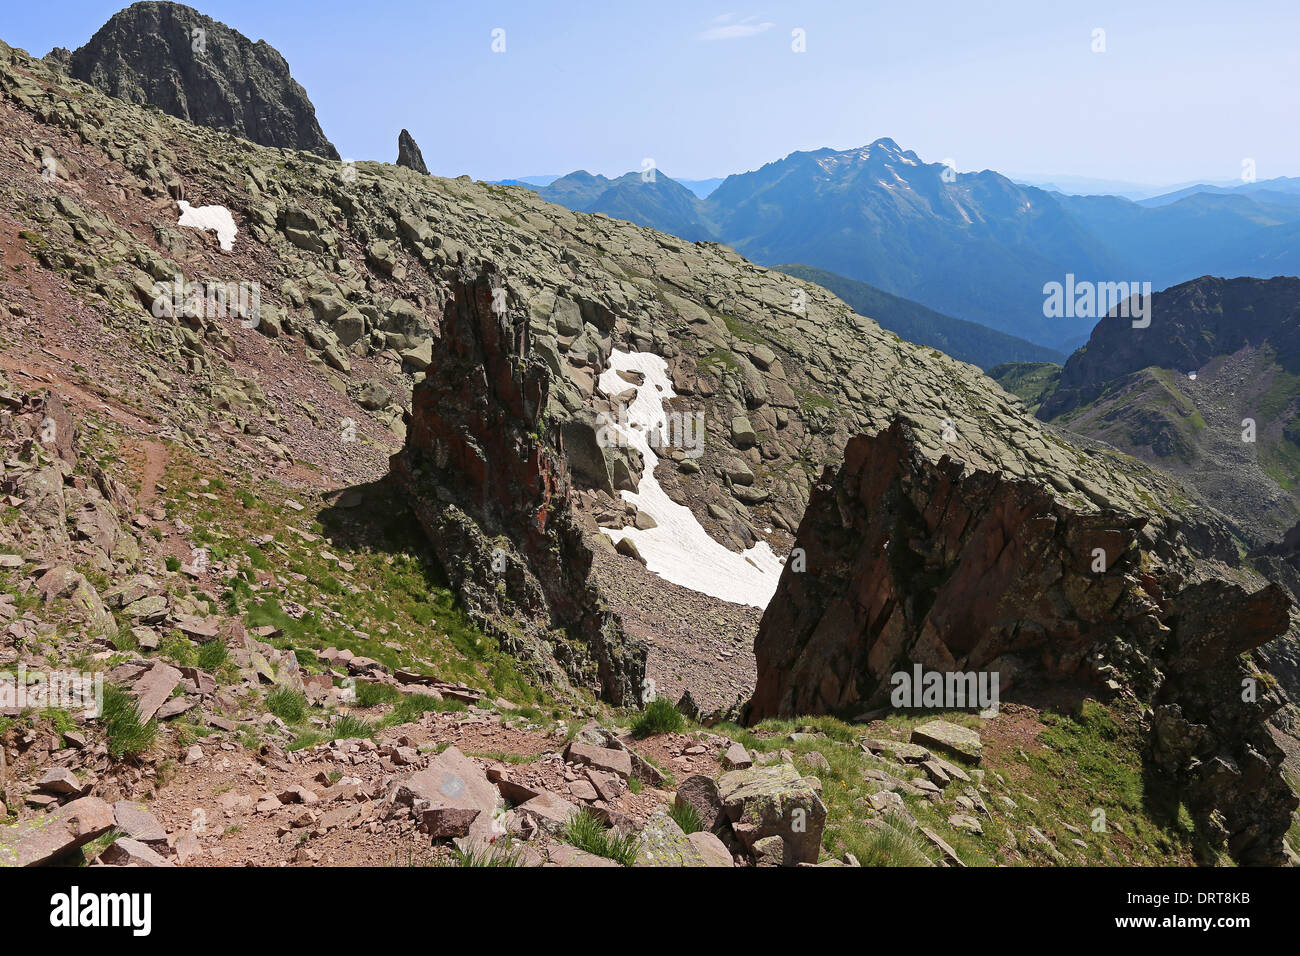 Die Lagorai Berggruppe. Porphyrgestein in der Nähe des Cima Cece Peaks. Trentino. Italienische Alpen. Europa. Stockfoto